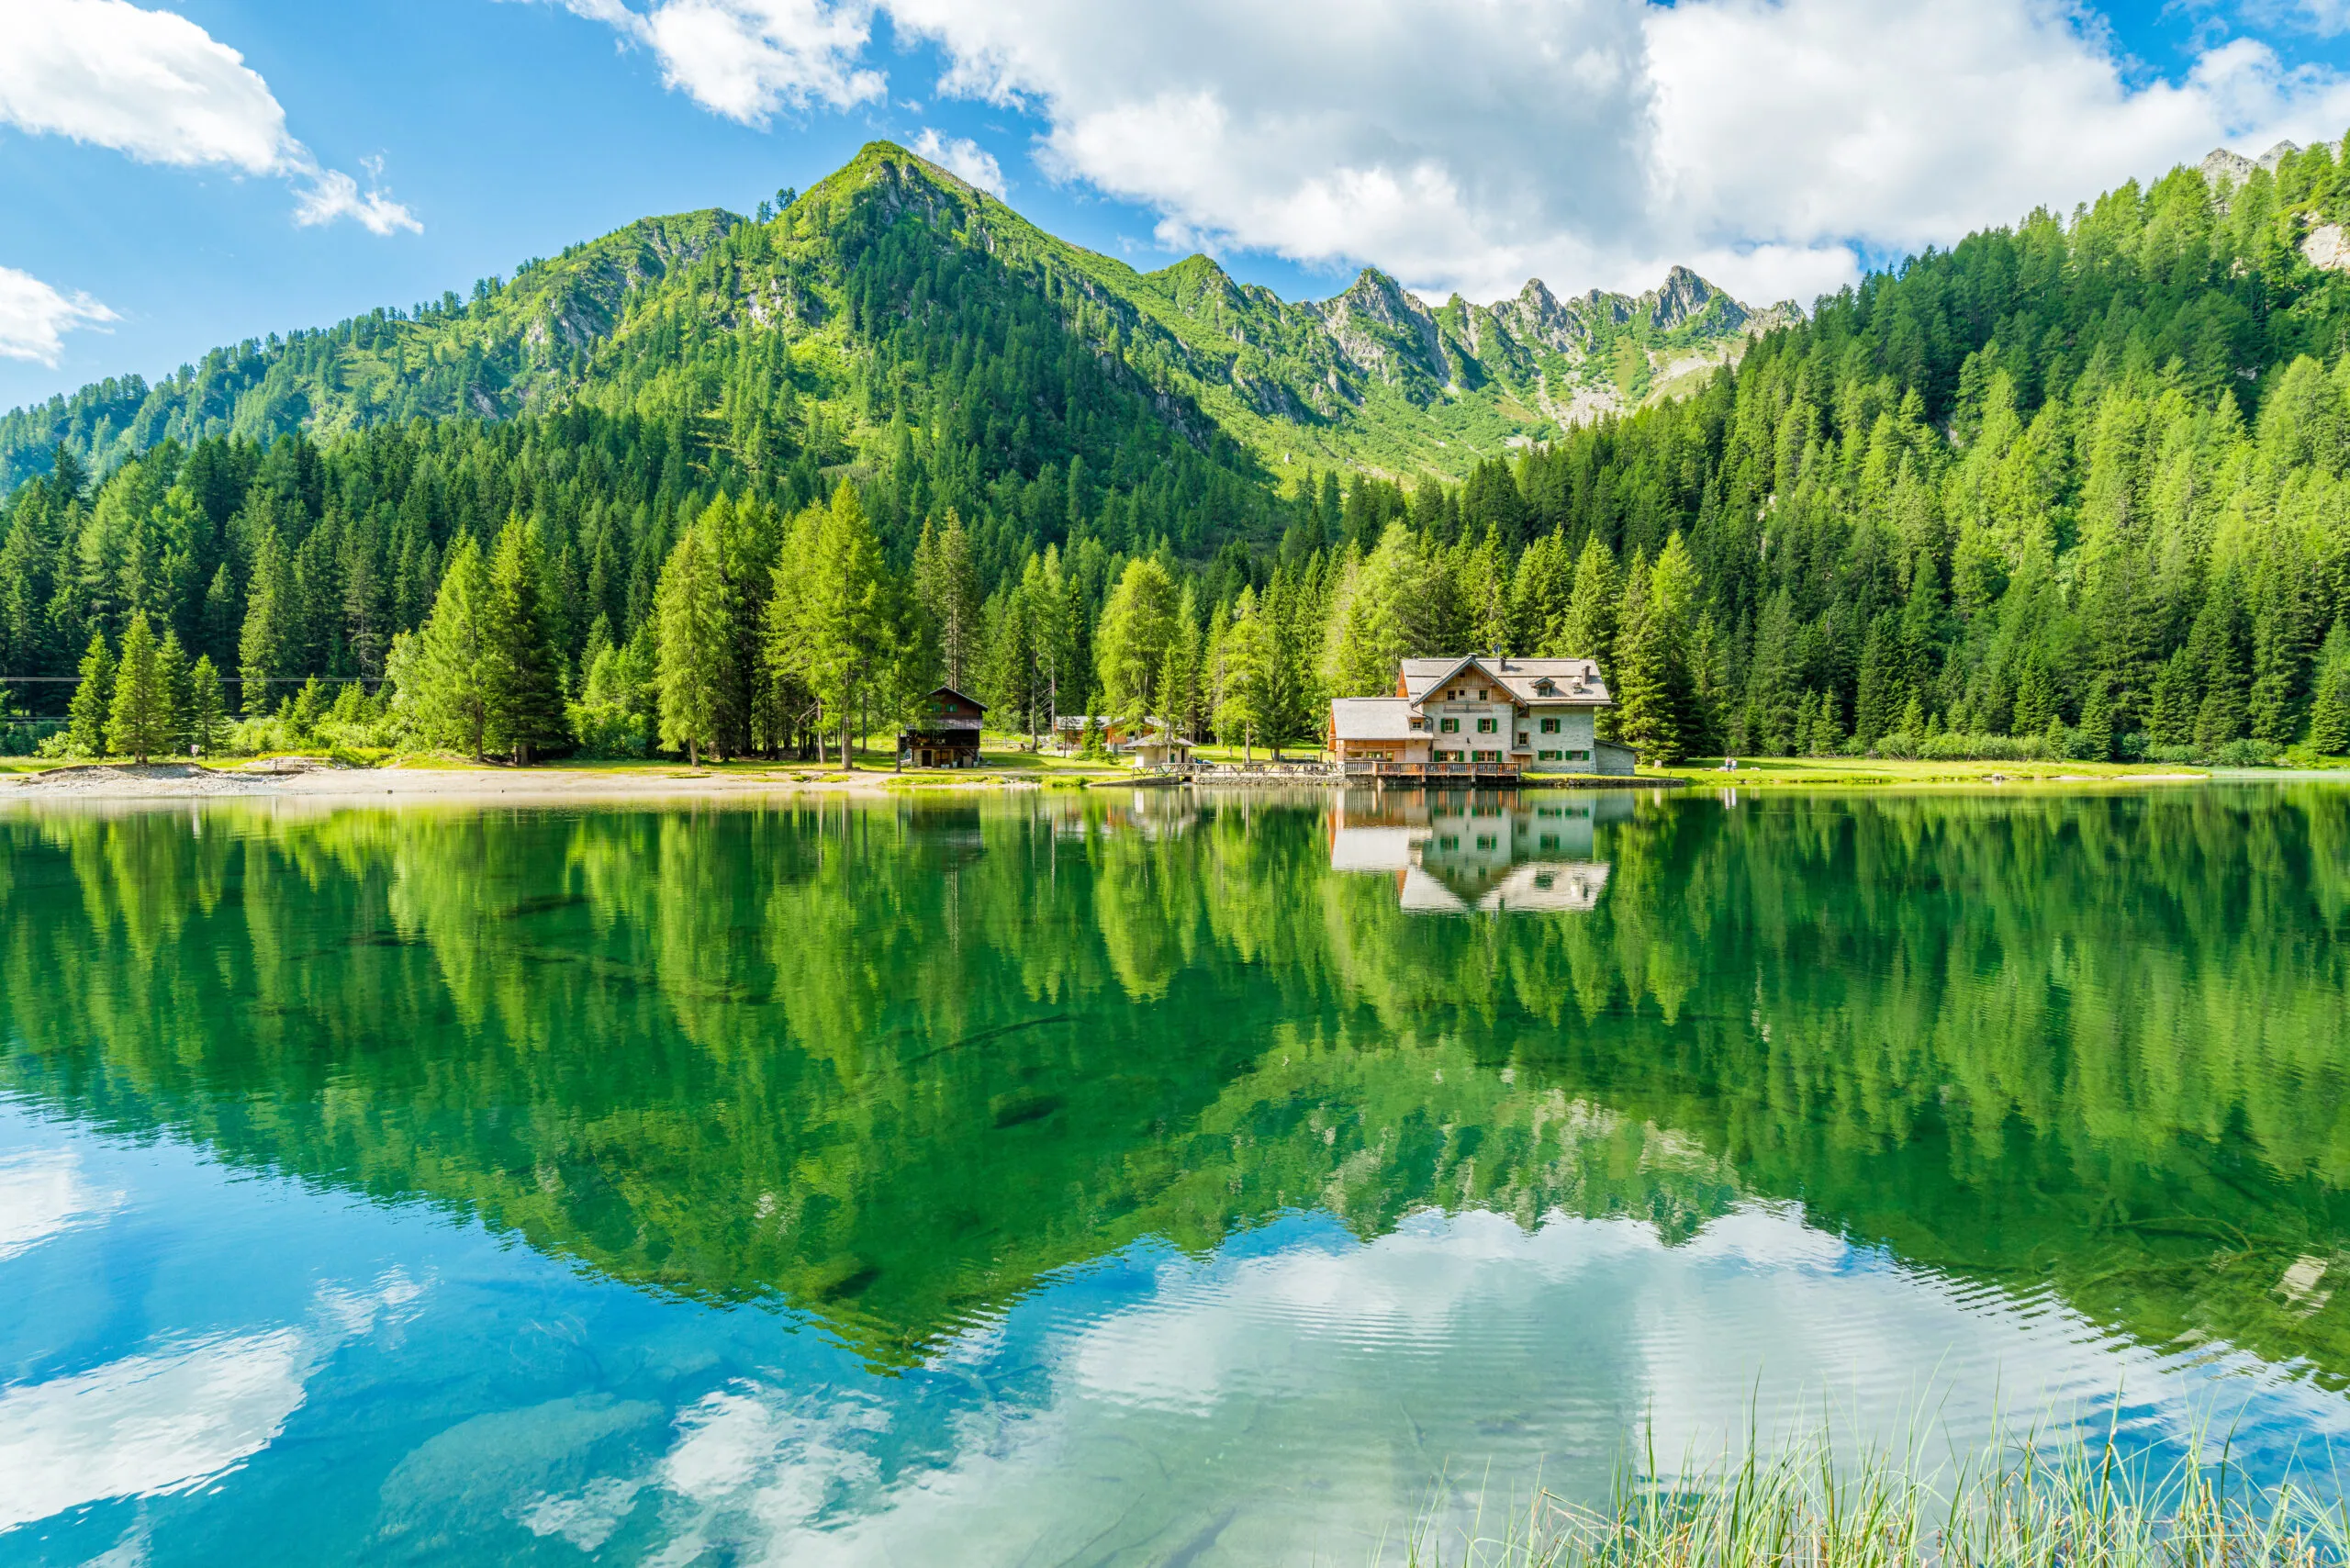 Paisaje idílico en el lago Nambino, cerca de Madonna di Campiglio. Provincia de Trento, Trentino Alto Adigio, norte de Italia.